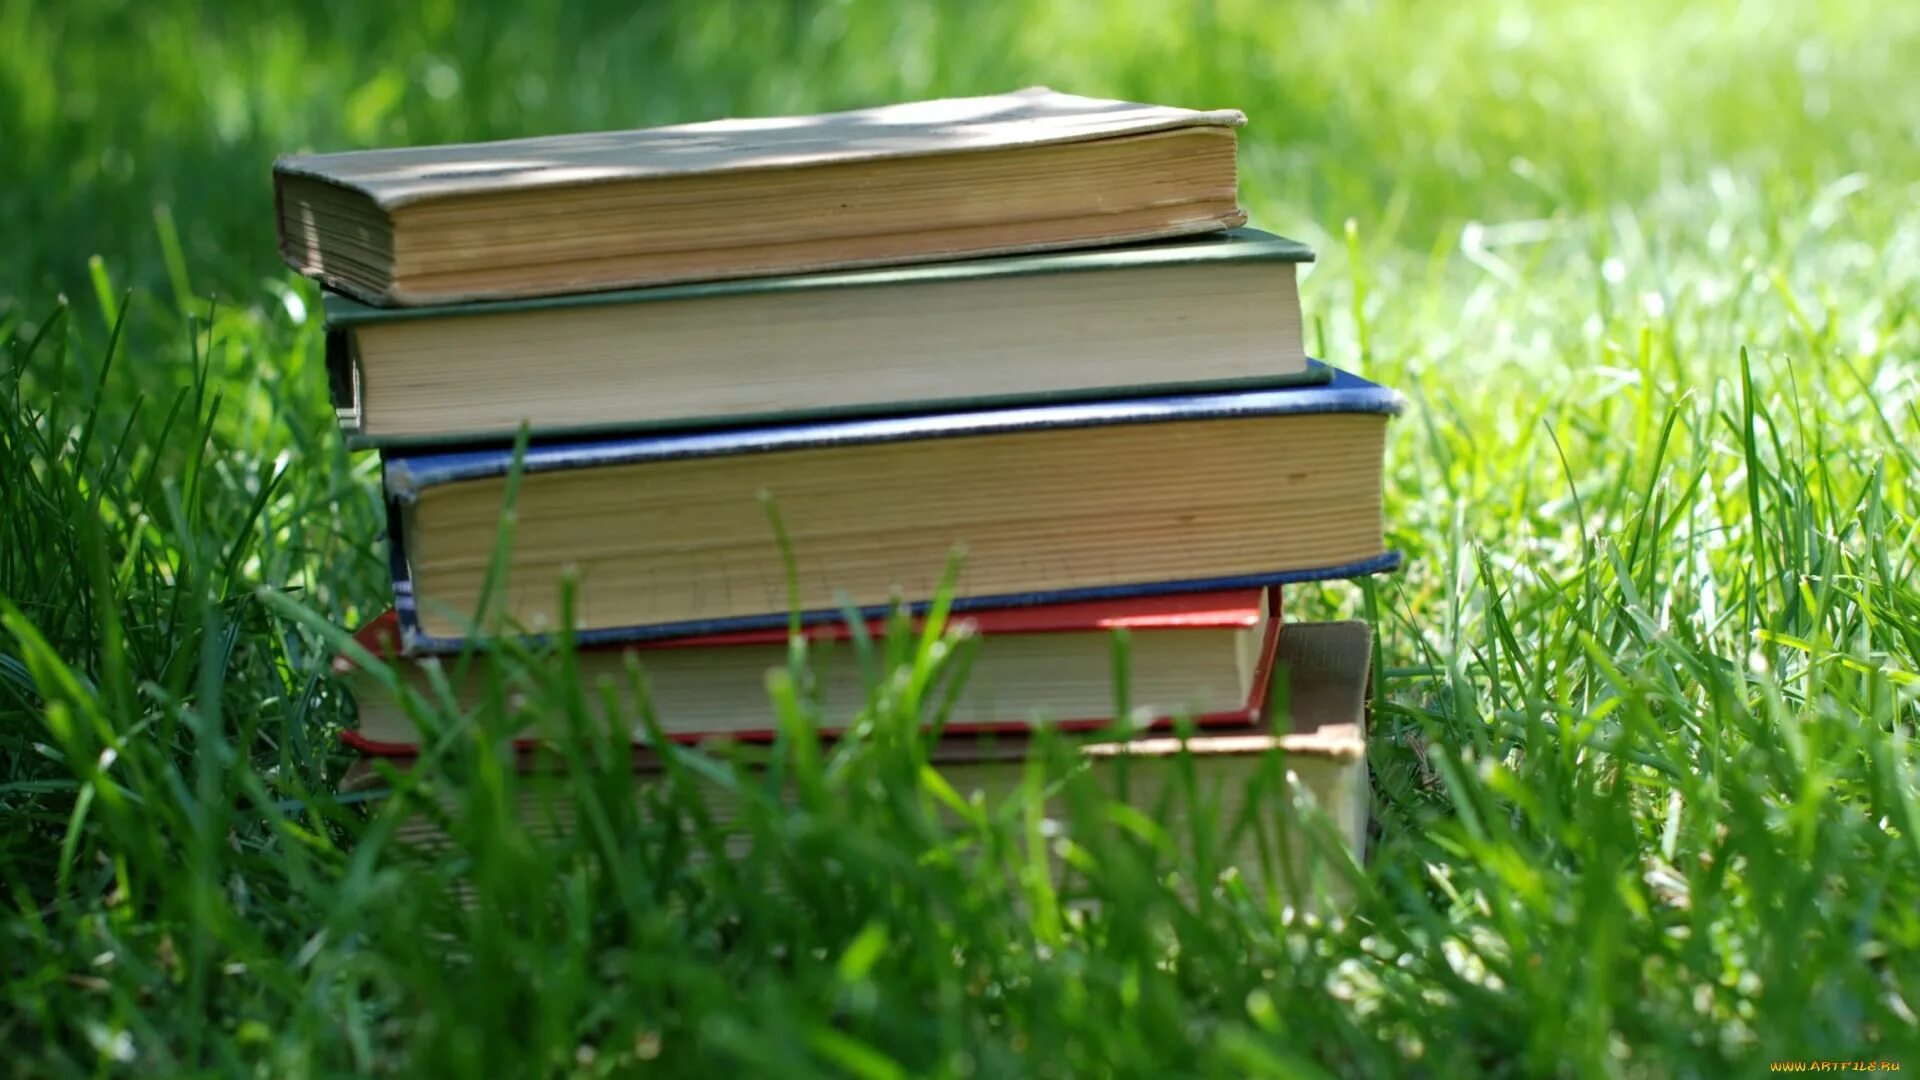 Покупка новой книги. Стопка книг. Чтение на природе. Книга на траве. Лето с книгой.